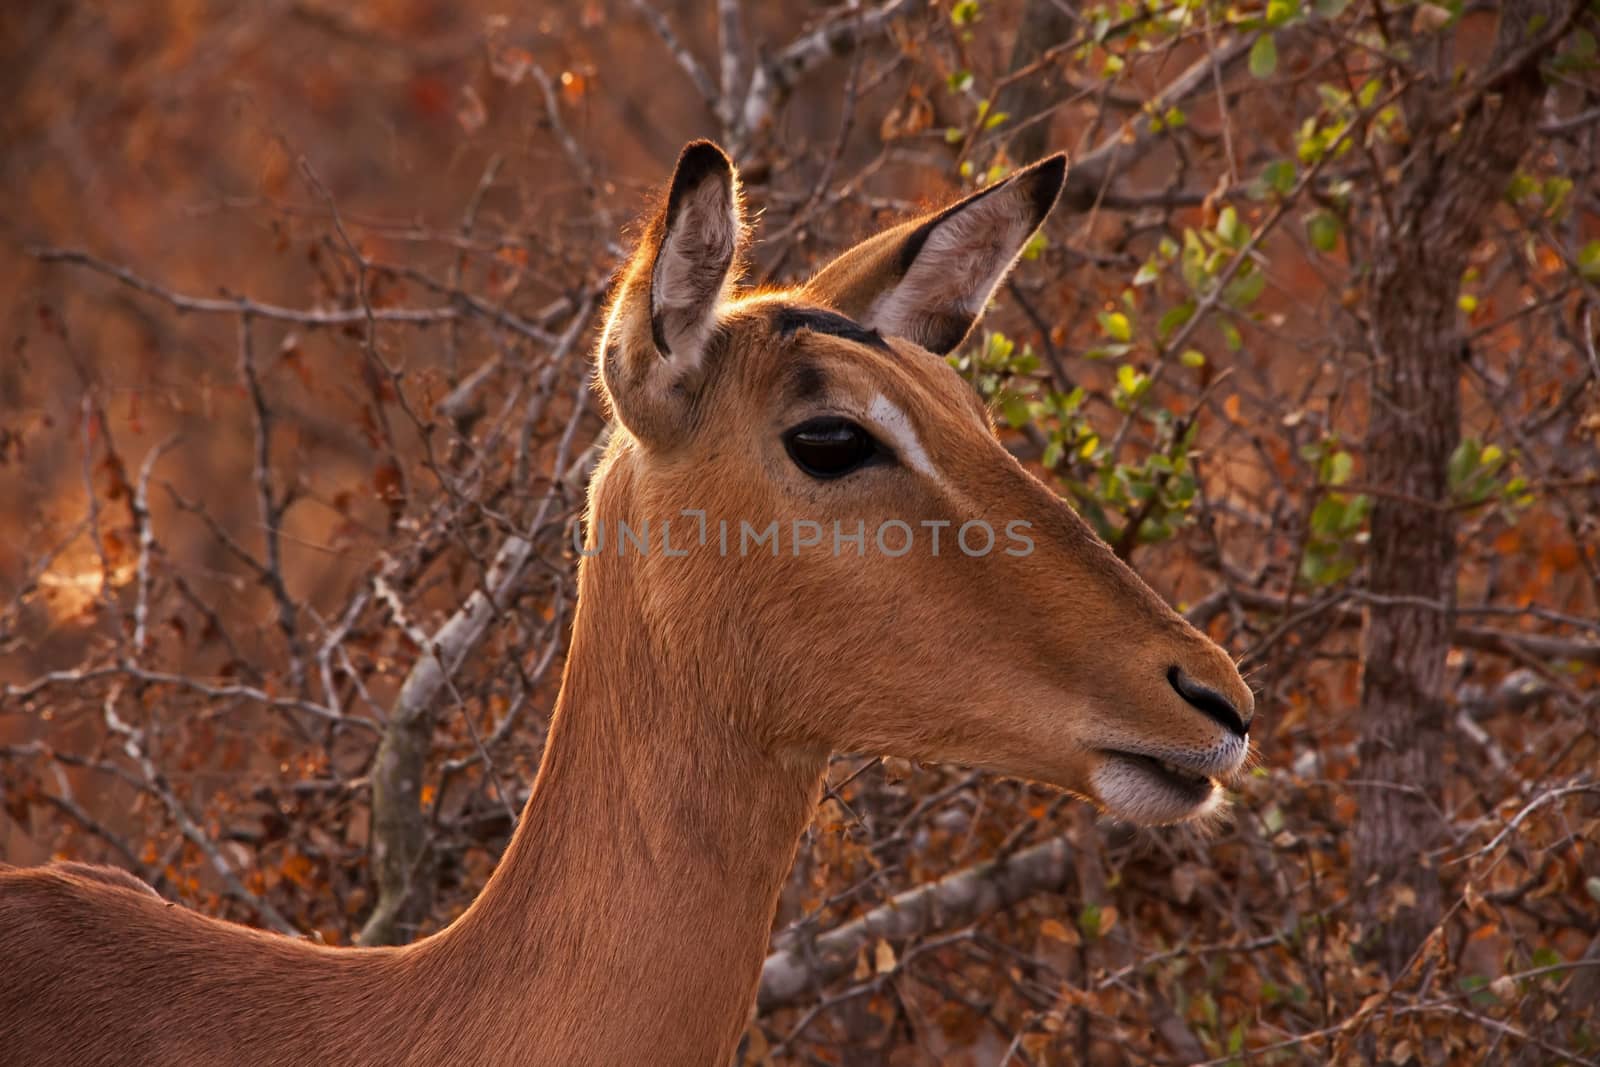 Impala (Aepyceros melampus) by kobus_peche